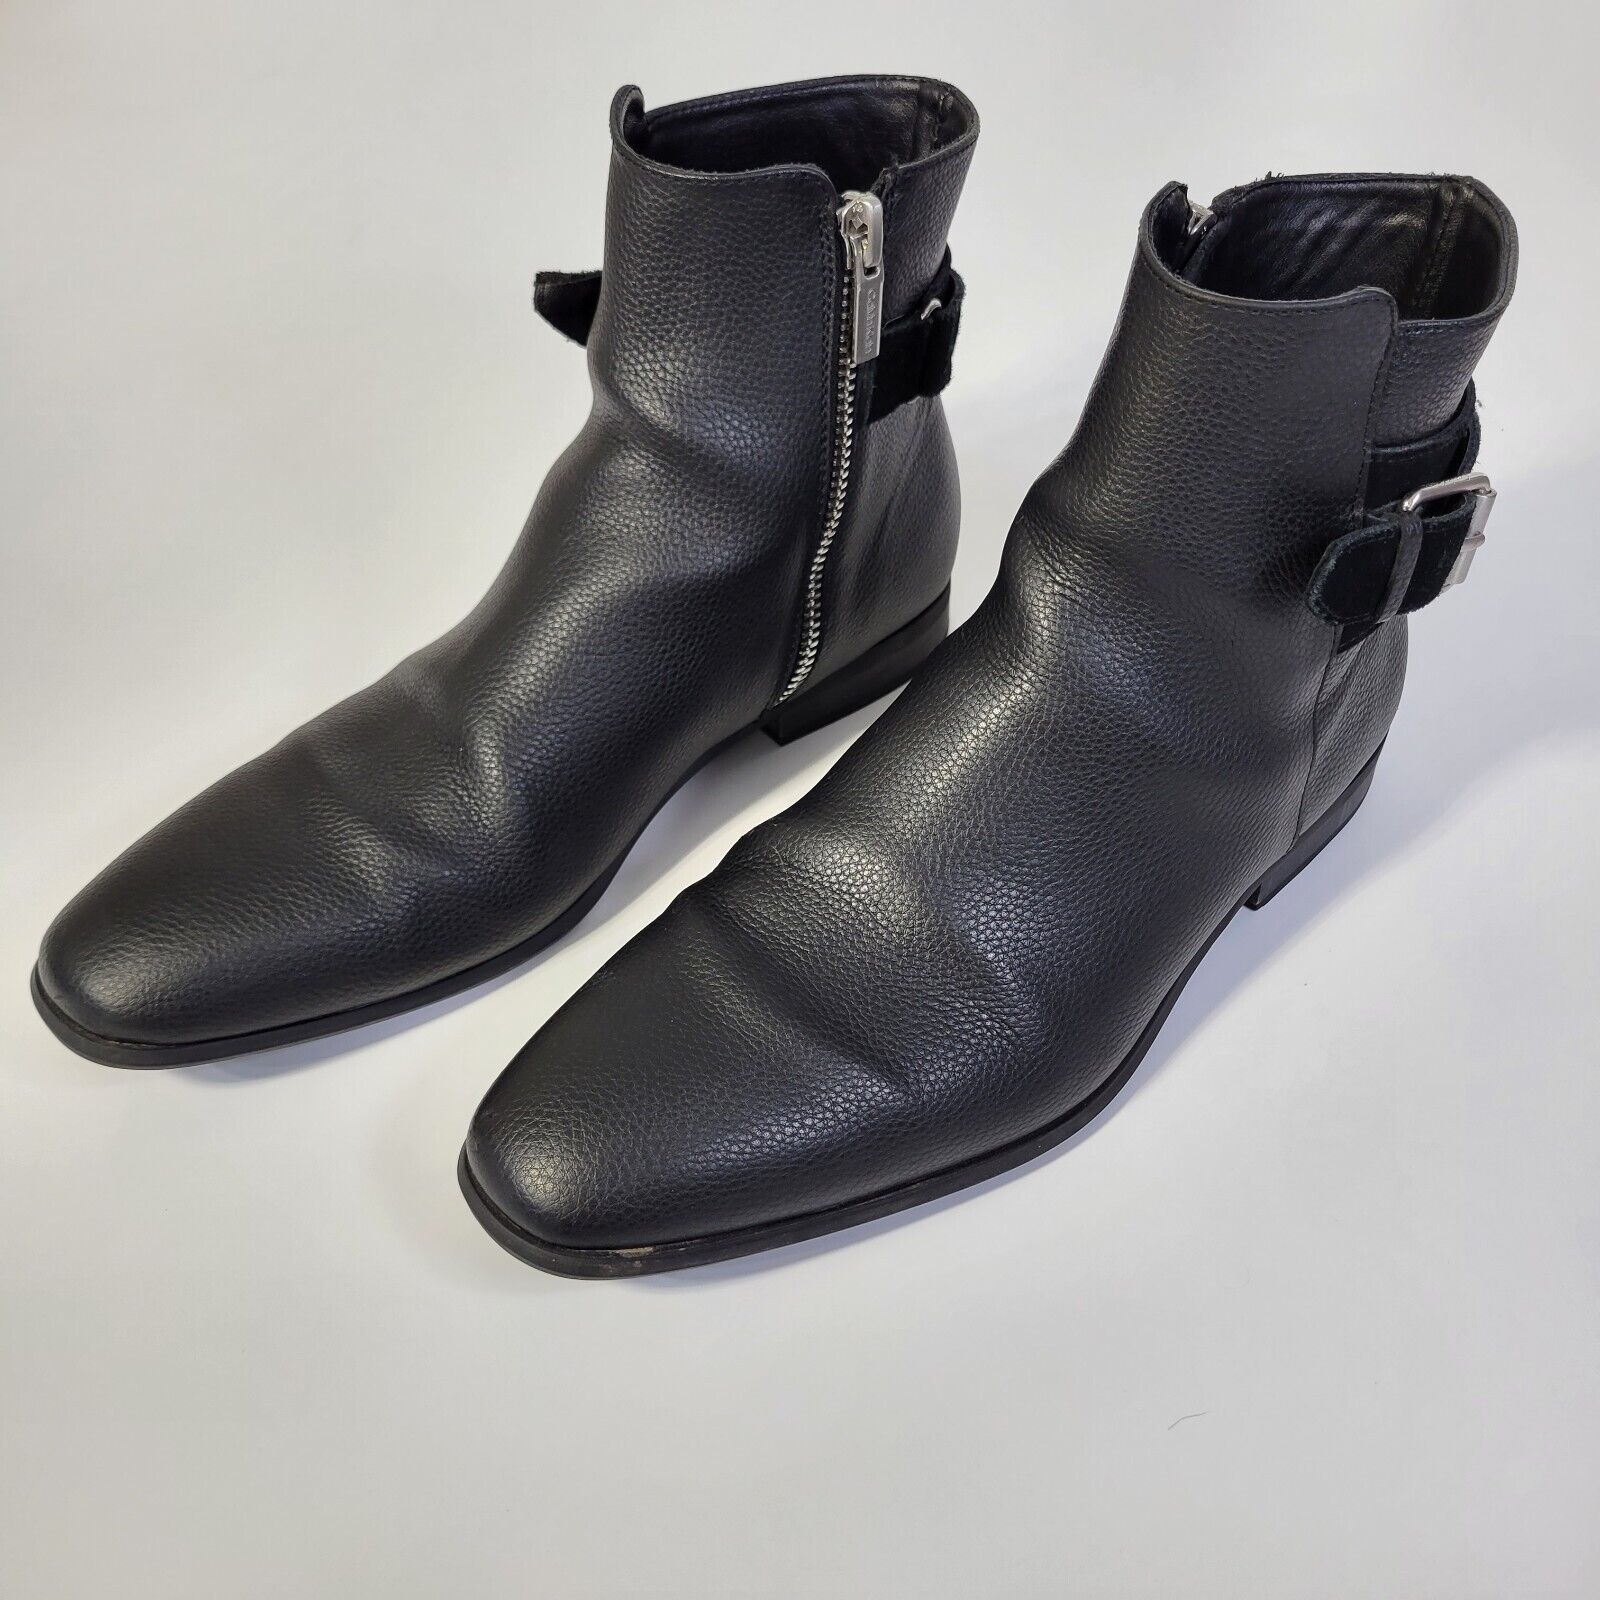 binnen in tegenstelling tot Betrokken Calvin Klein Lorenzo Men's Black Leather Casual Dress Boots Size 11.5 | eBay